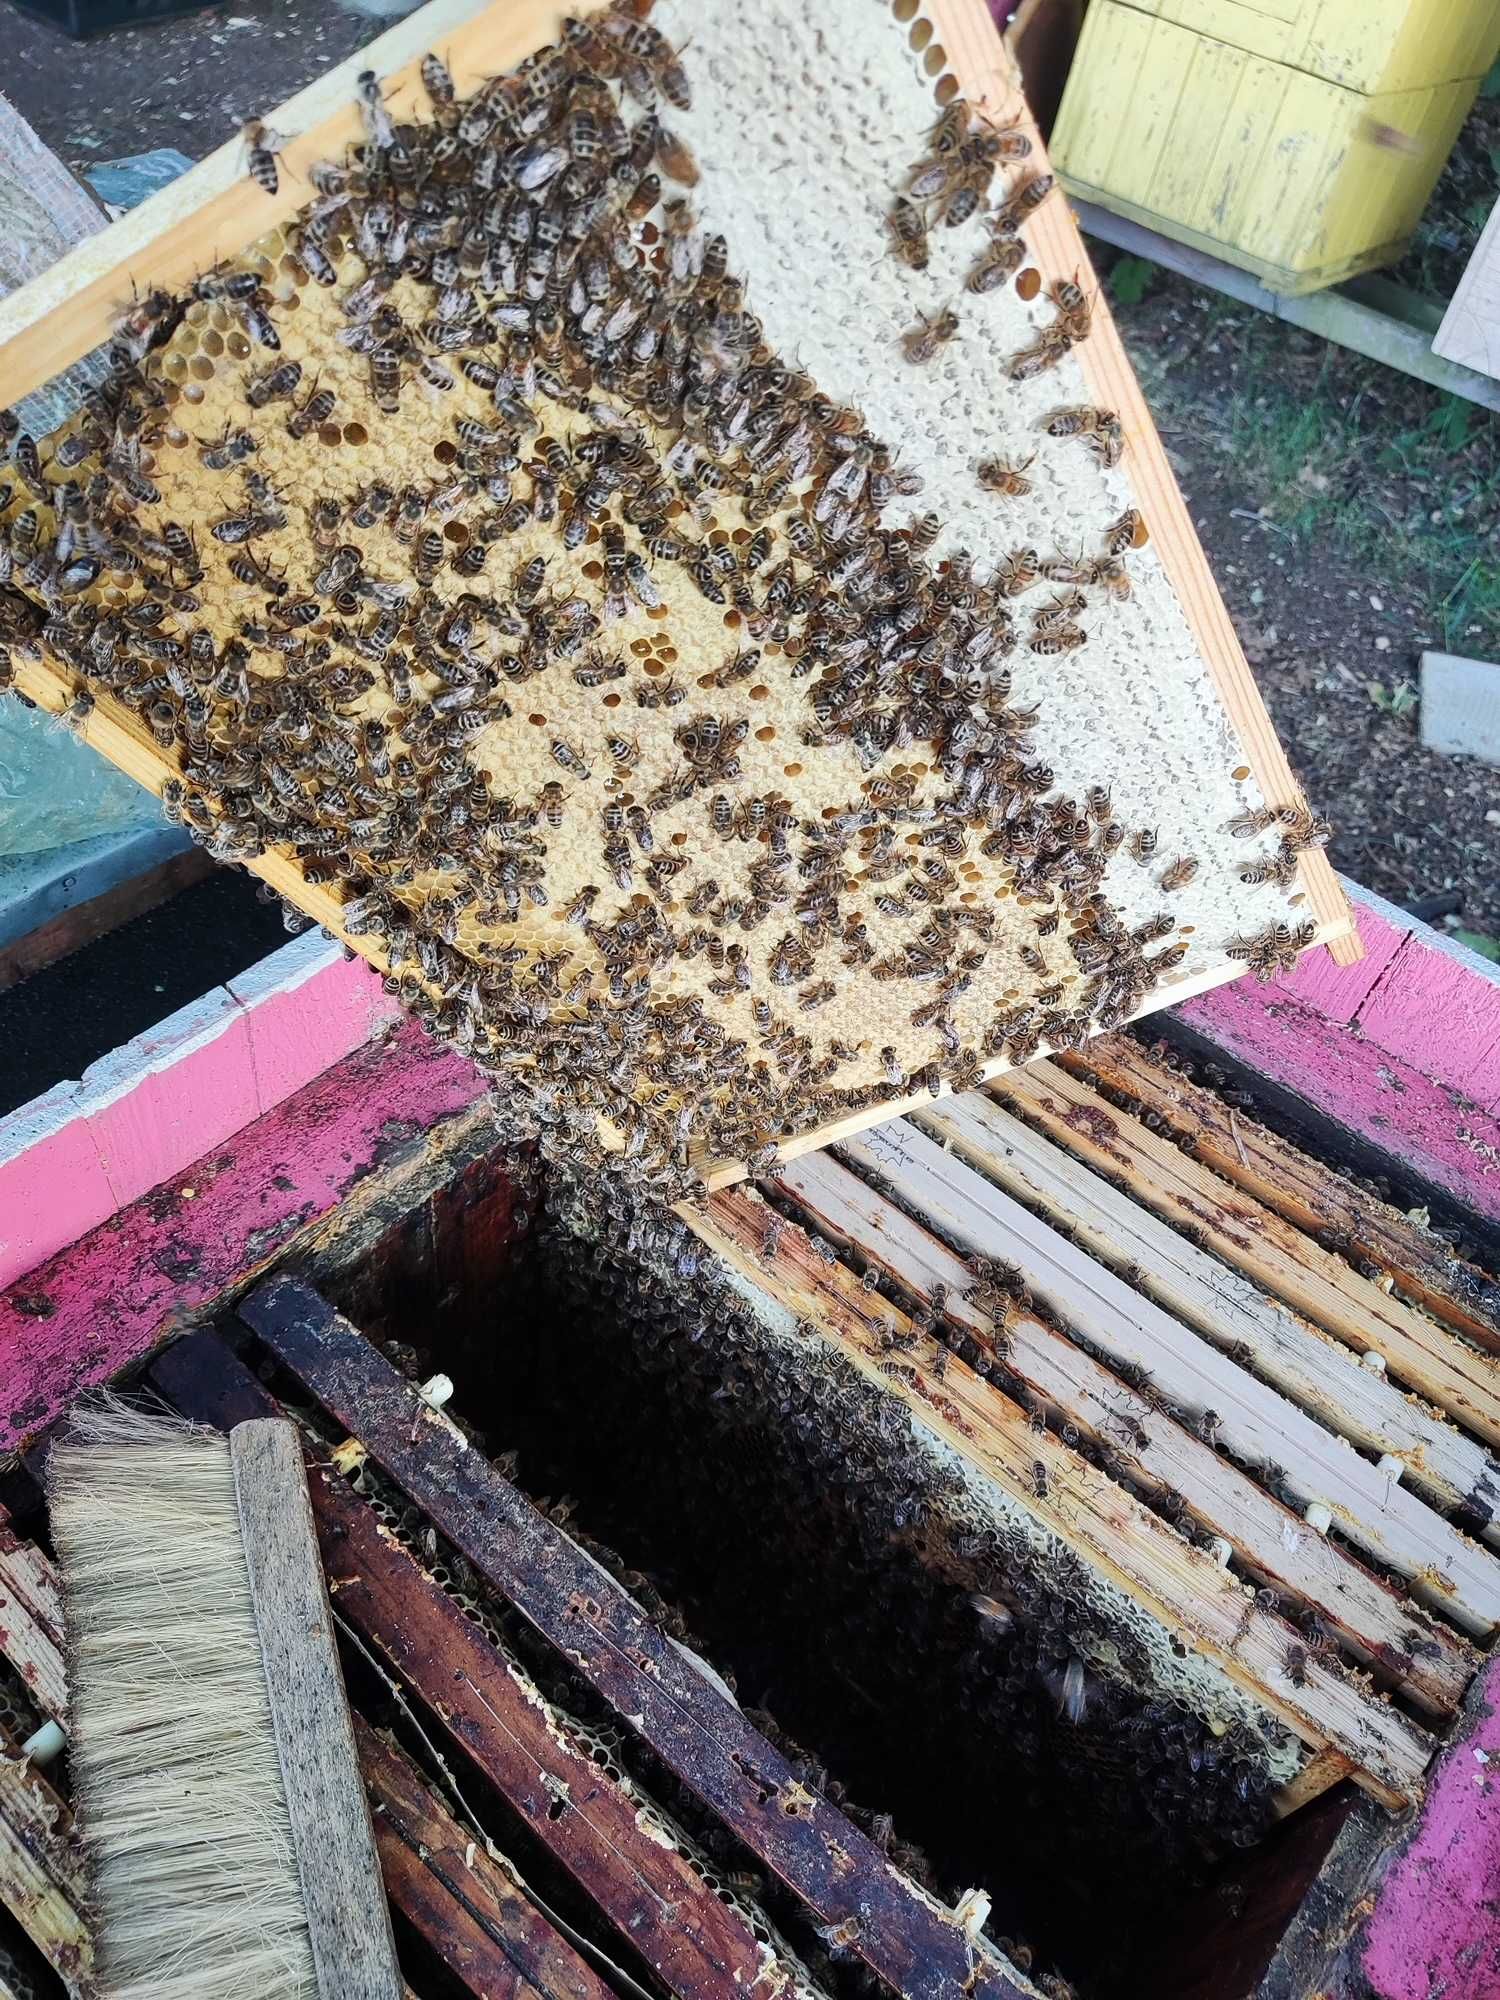 Rodziny pszczele 10-12 ramek krainka, r.wlkp, Ule, pasieka.